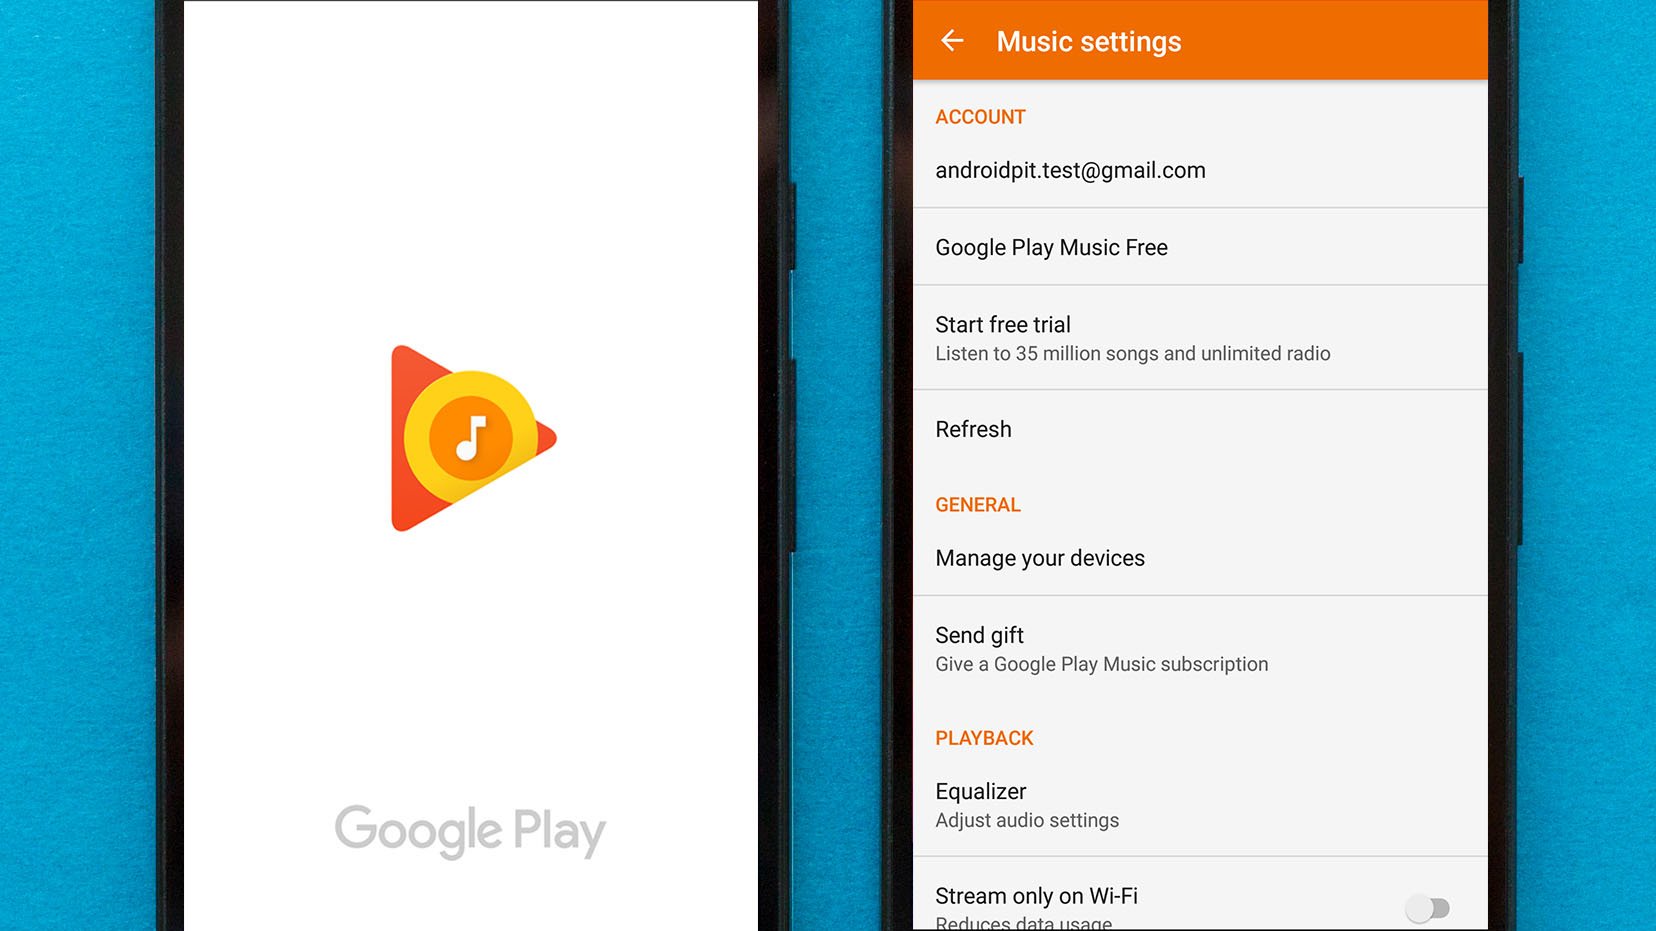 Well play music. Google Play Music. Google Play Music APK. Play для музыкального приложения. Приложение музыка в гугл плей.